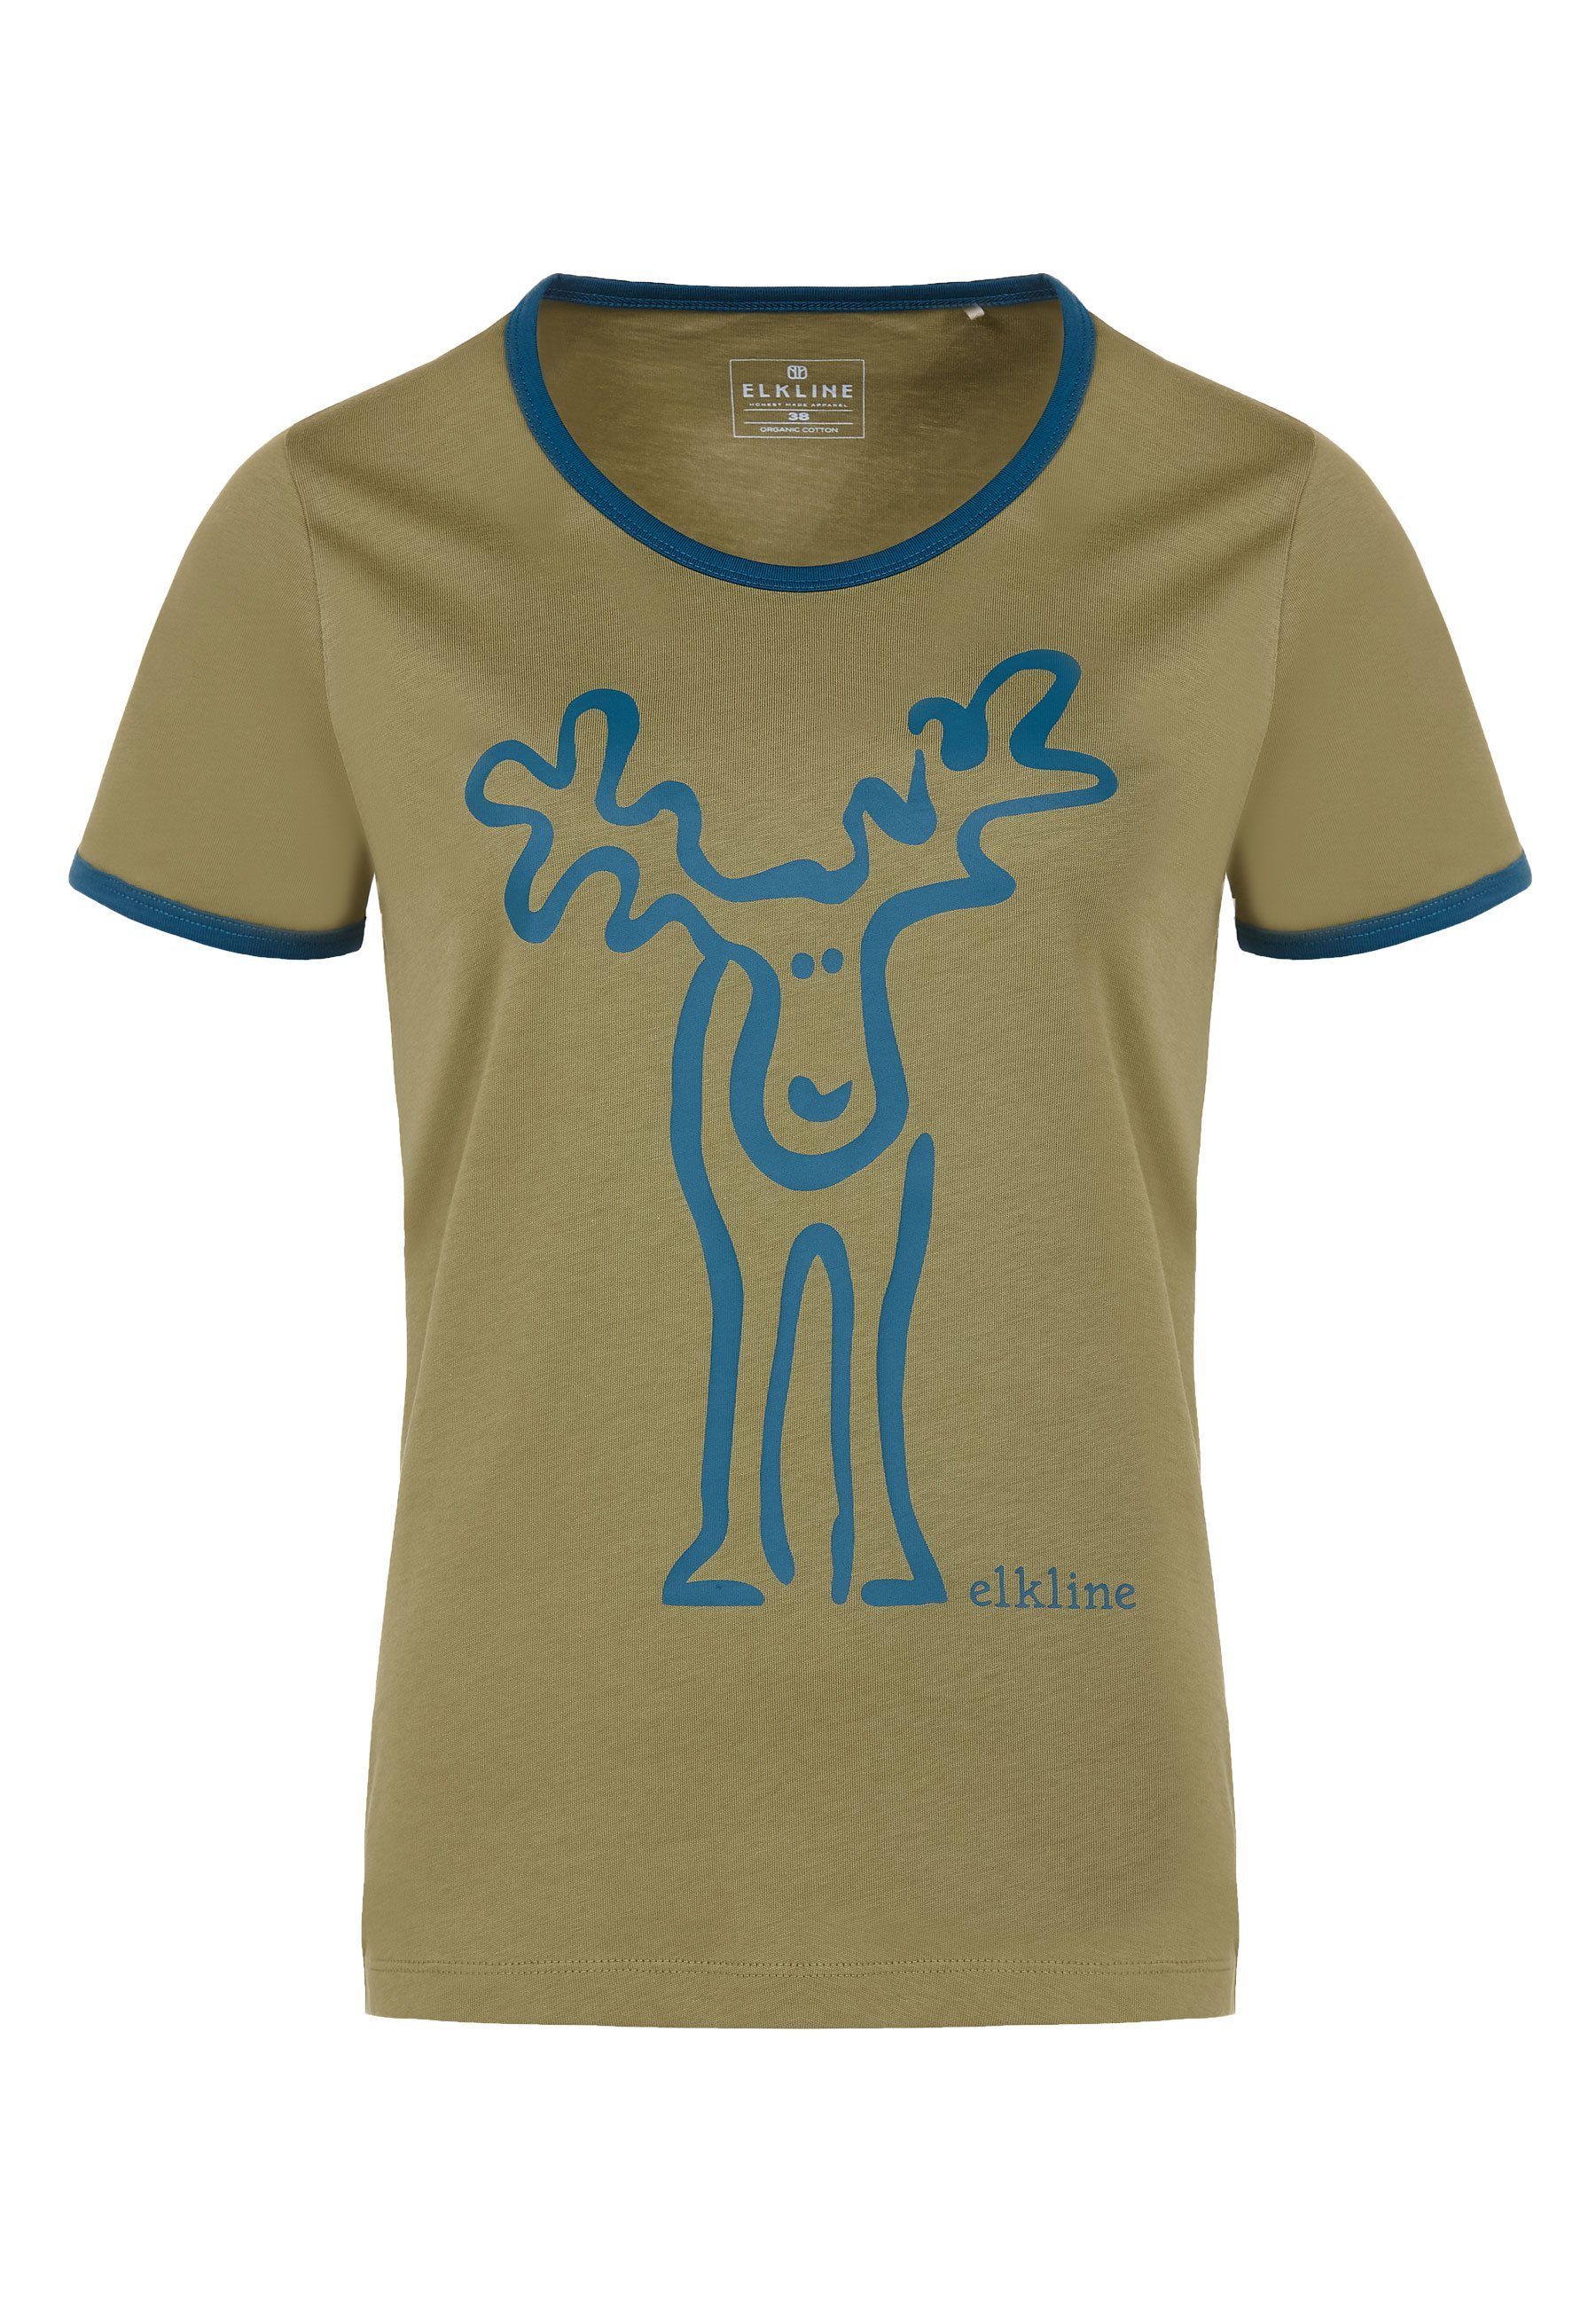 Elkline T-Shirt Rudolfine Retro Rücken Brust coral Elch Print blue - avocado und